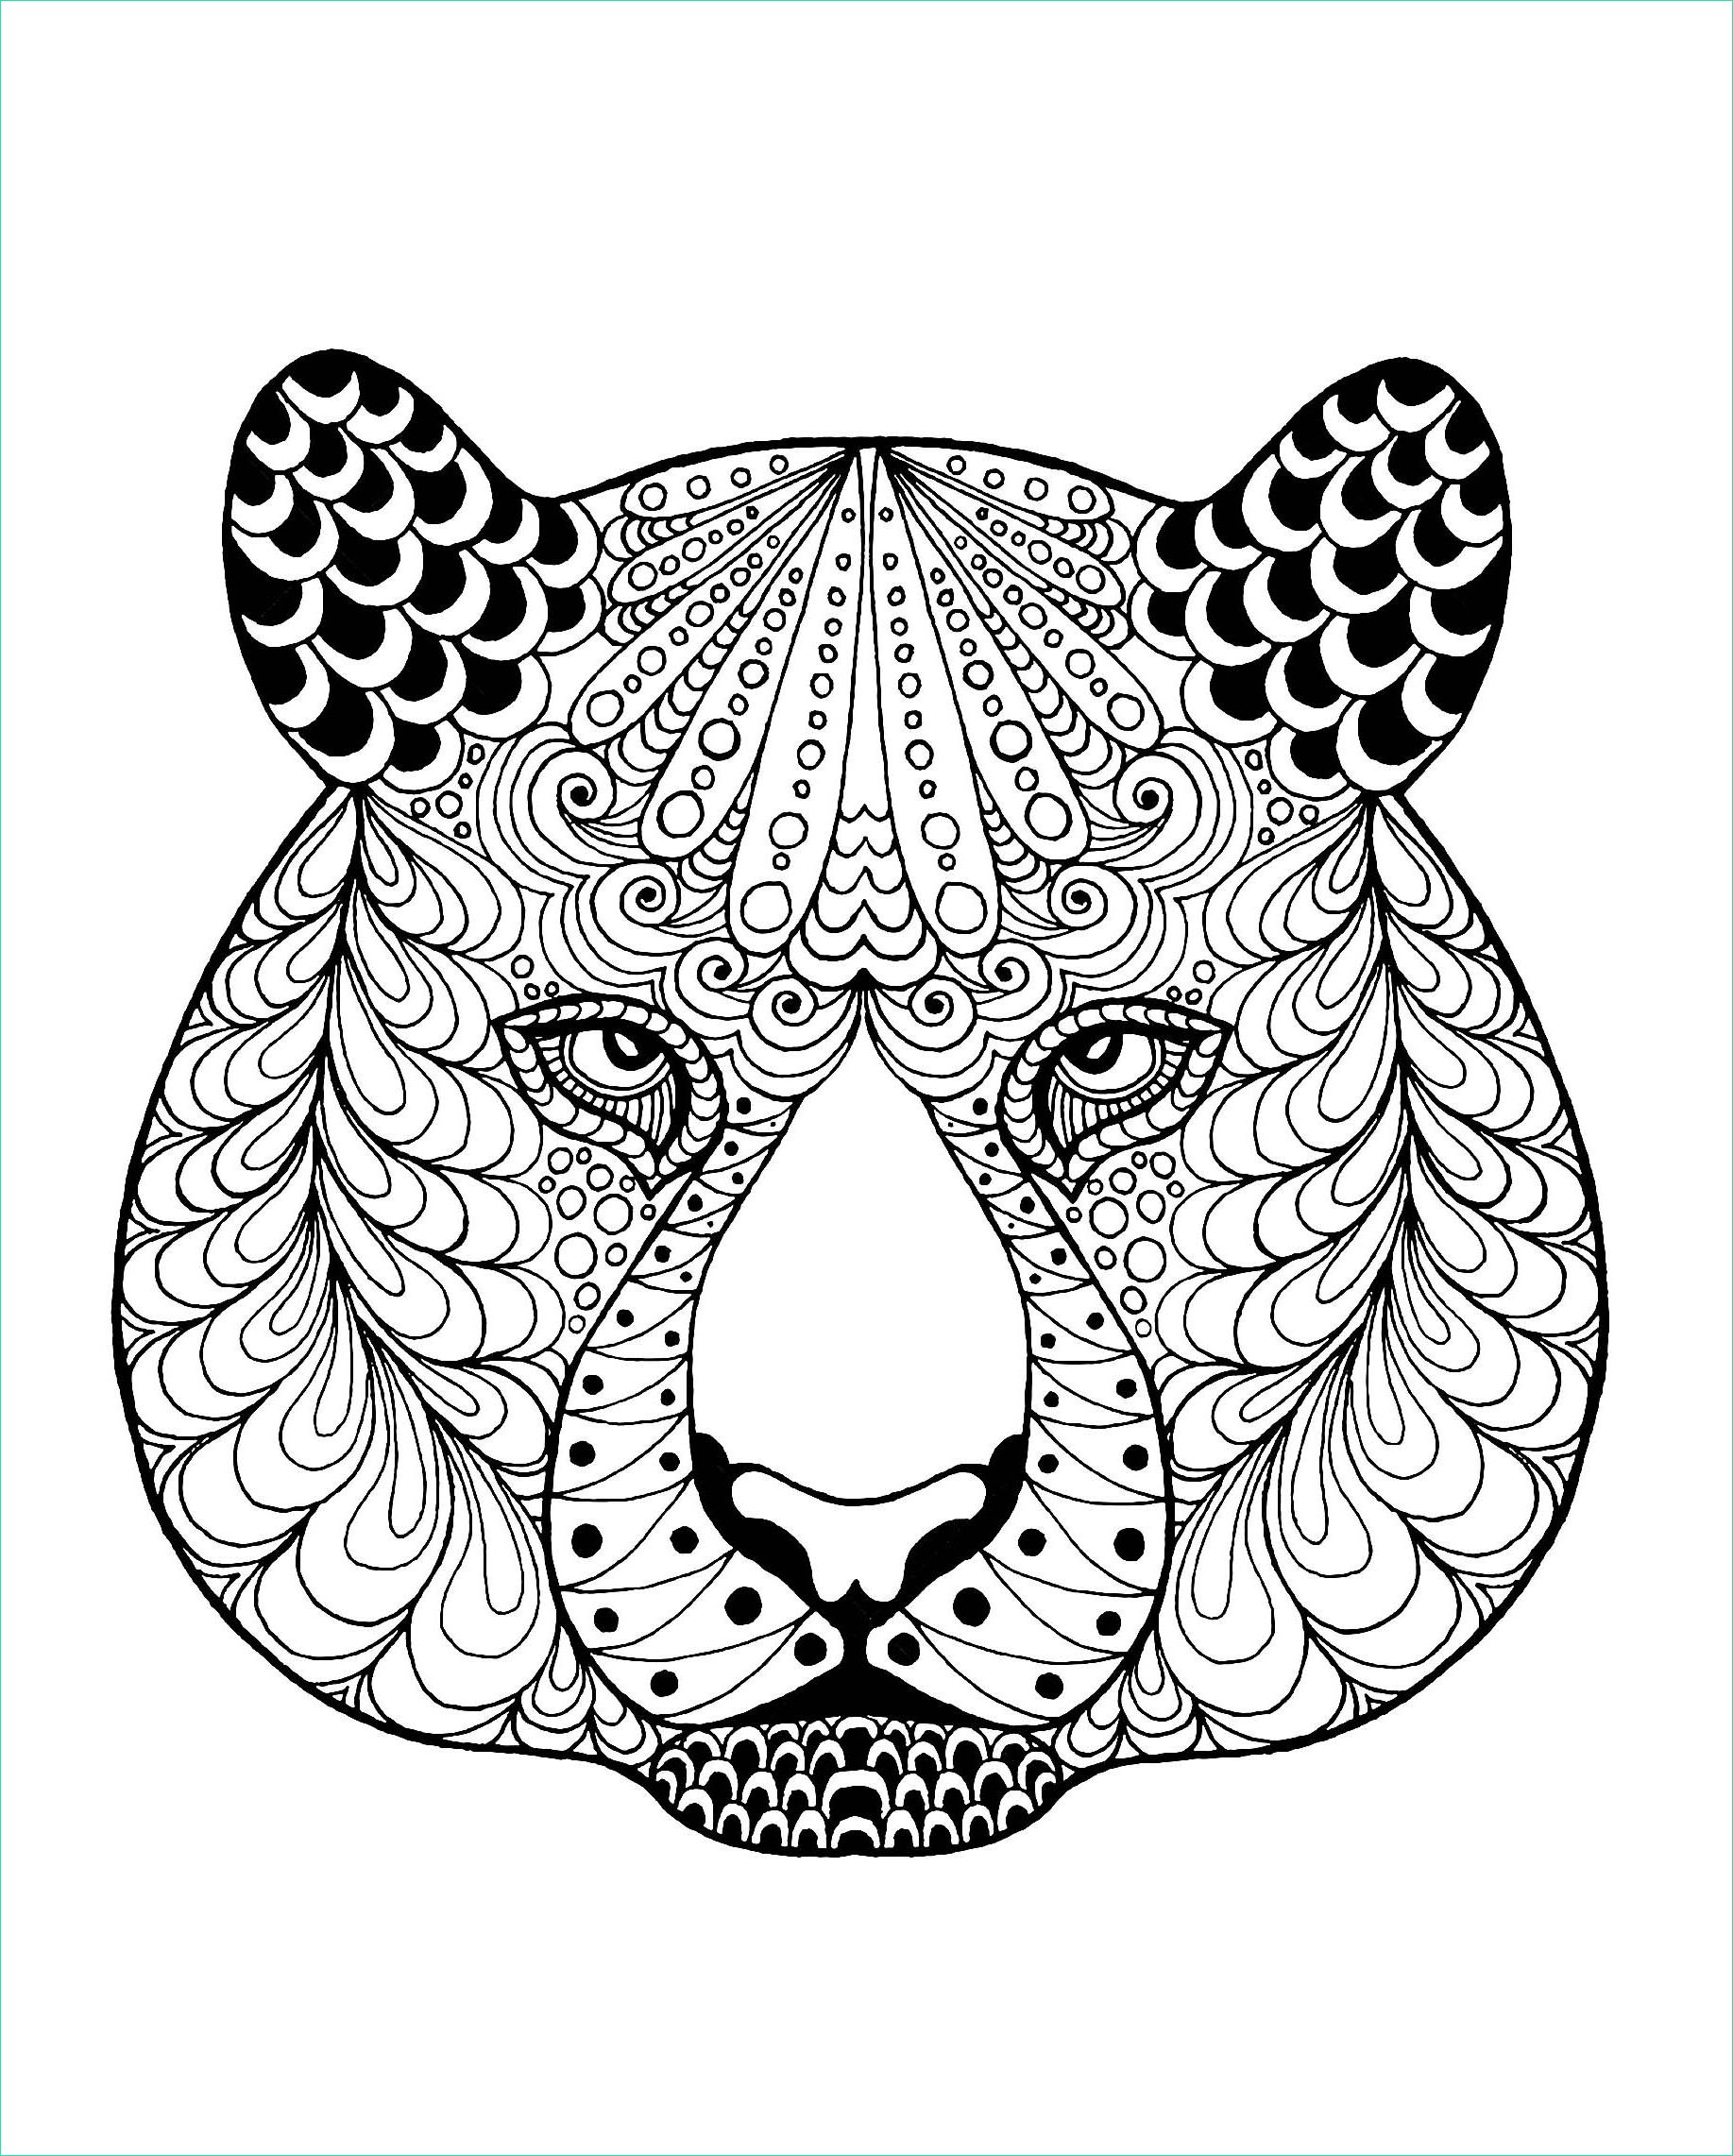 Dessin A Imprimer D&amp;#039;animaux Beau Image Coloriage De Tigre à Telecharger Gratuitement Coloriage